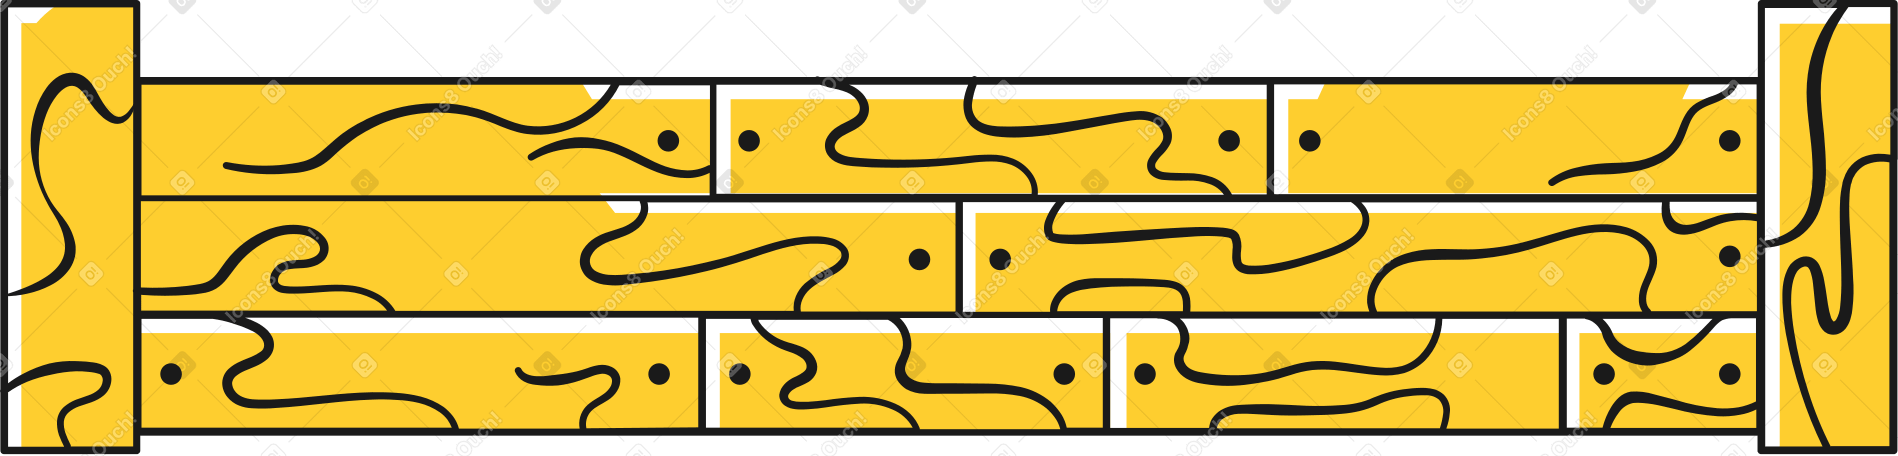 fence Illustration in PNG, SVG